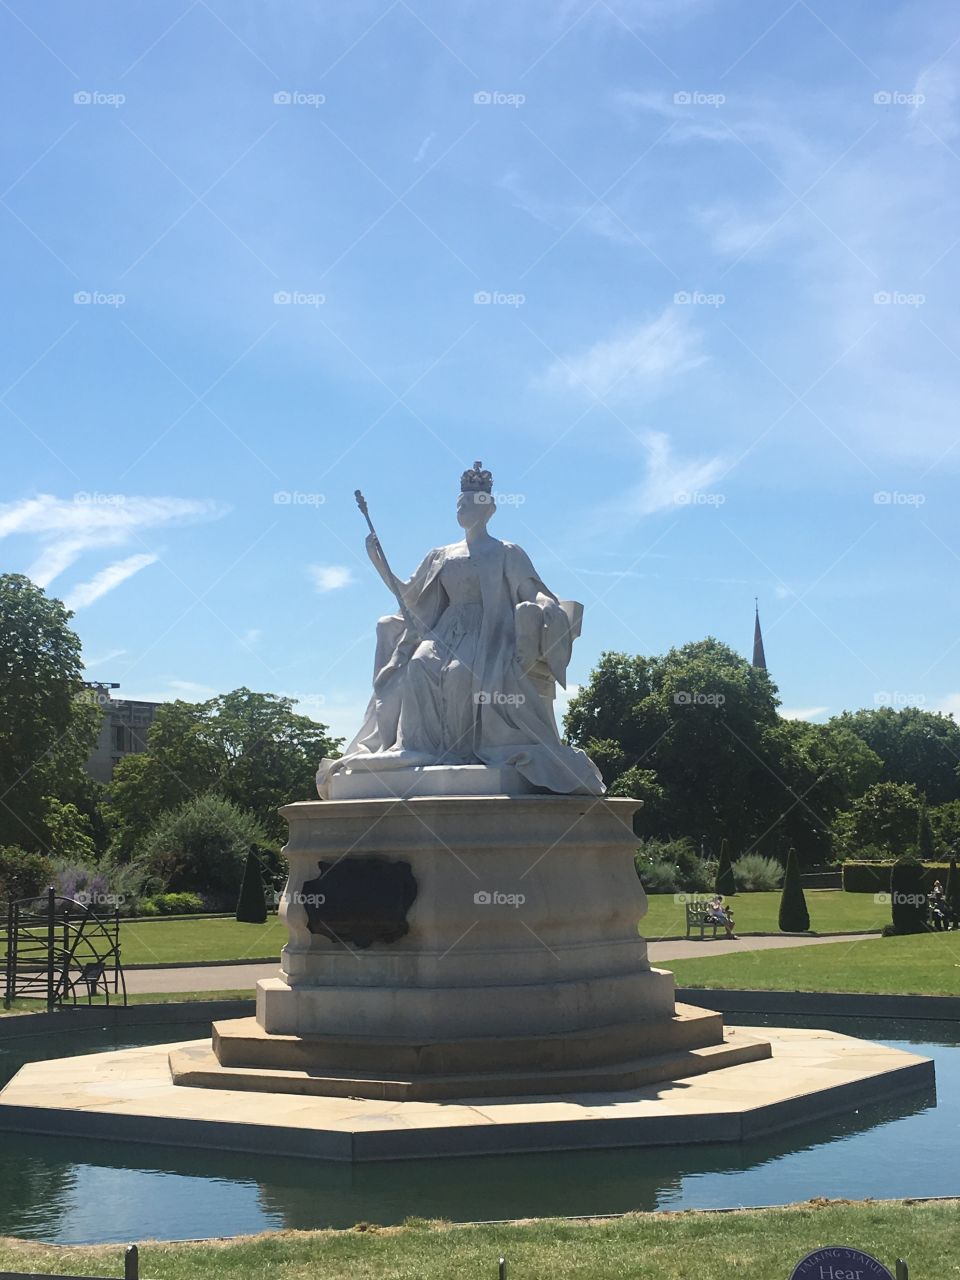 Queen Elizabeth Statue outside Kensington Palace In London